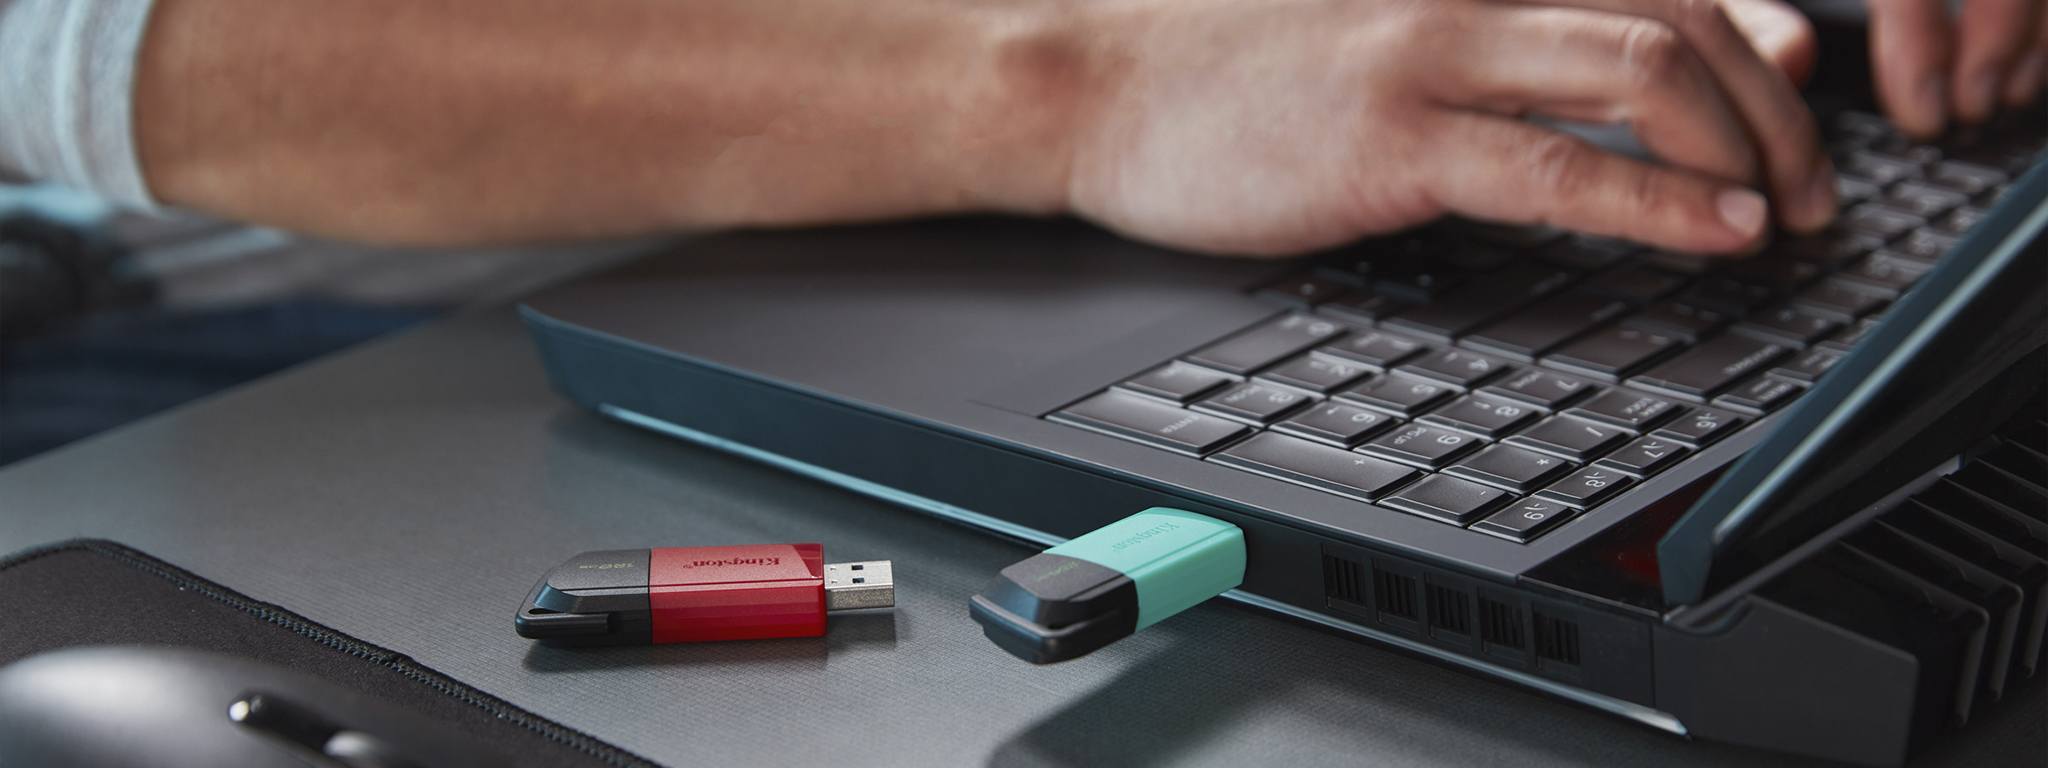 Dos unidades USB DT Exodia M, una con tapa verde y otra con tapa roja, de un escritorio y una persona trabajando con un ordenador portátil